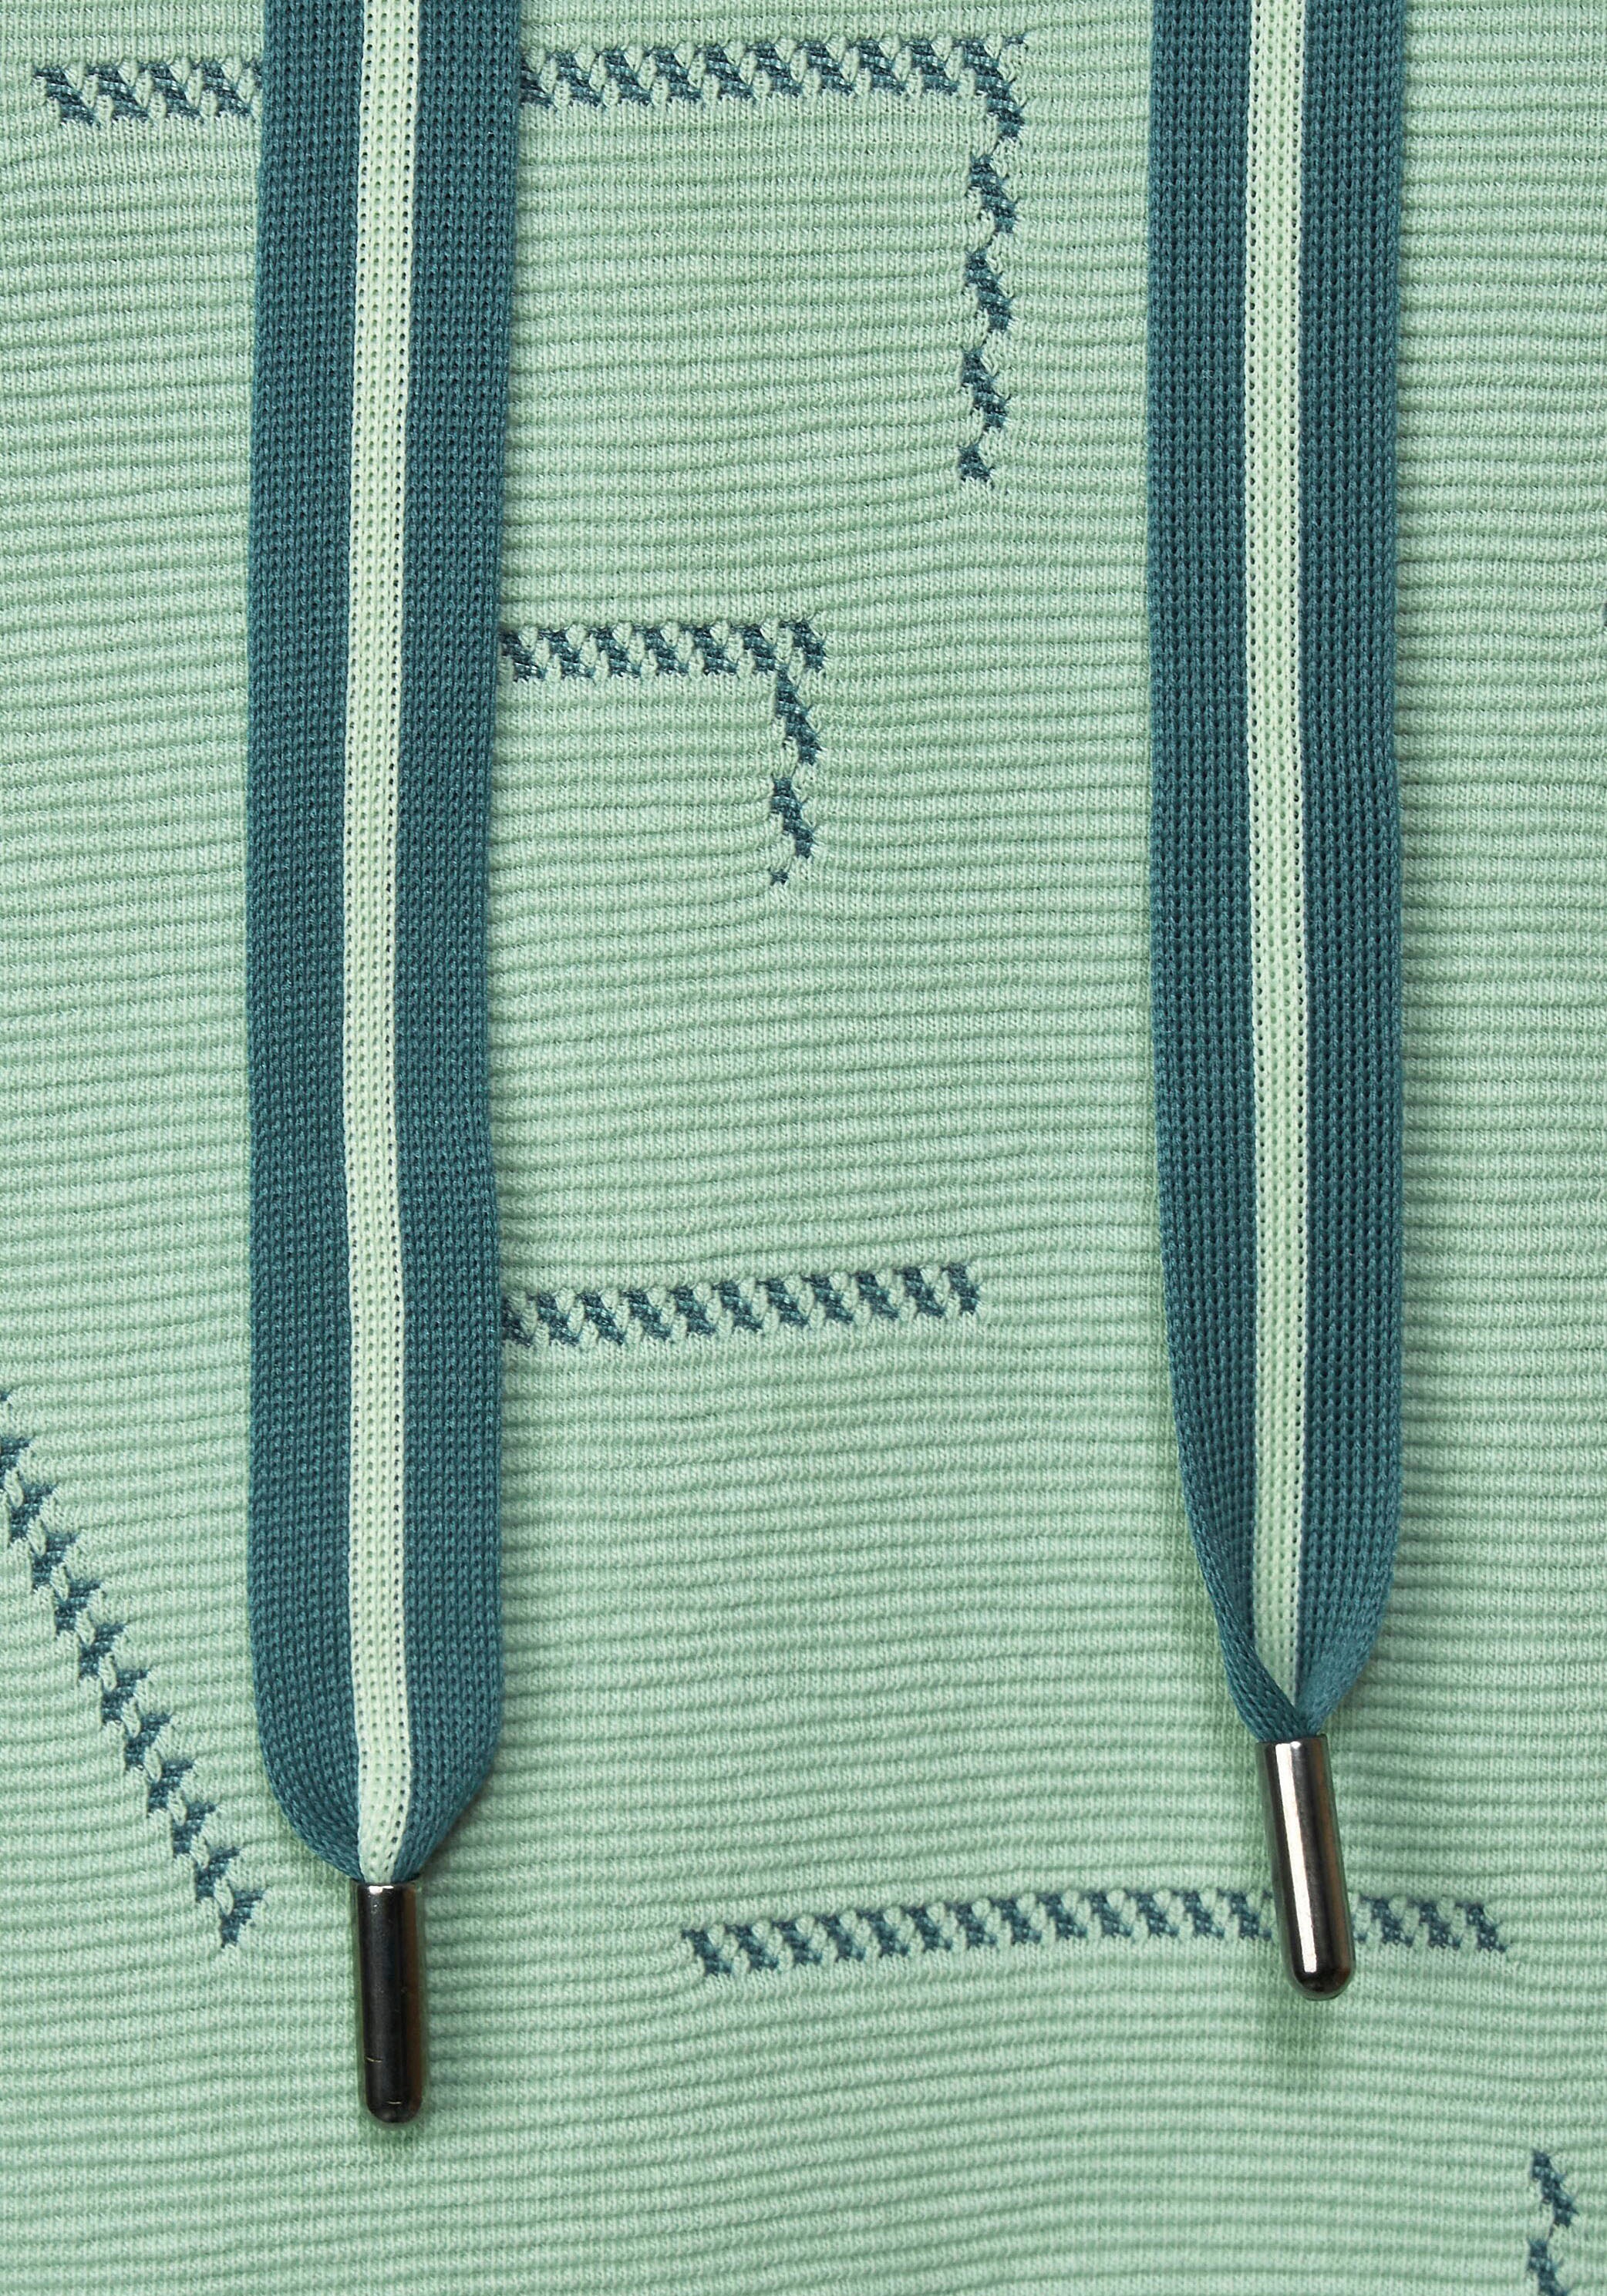 Cecil Sweatshirt, mit einzigartigem Jacquard-Muster für bestellen | BAUR